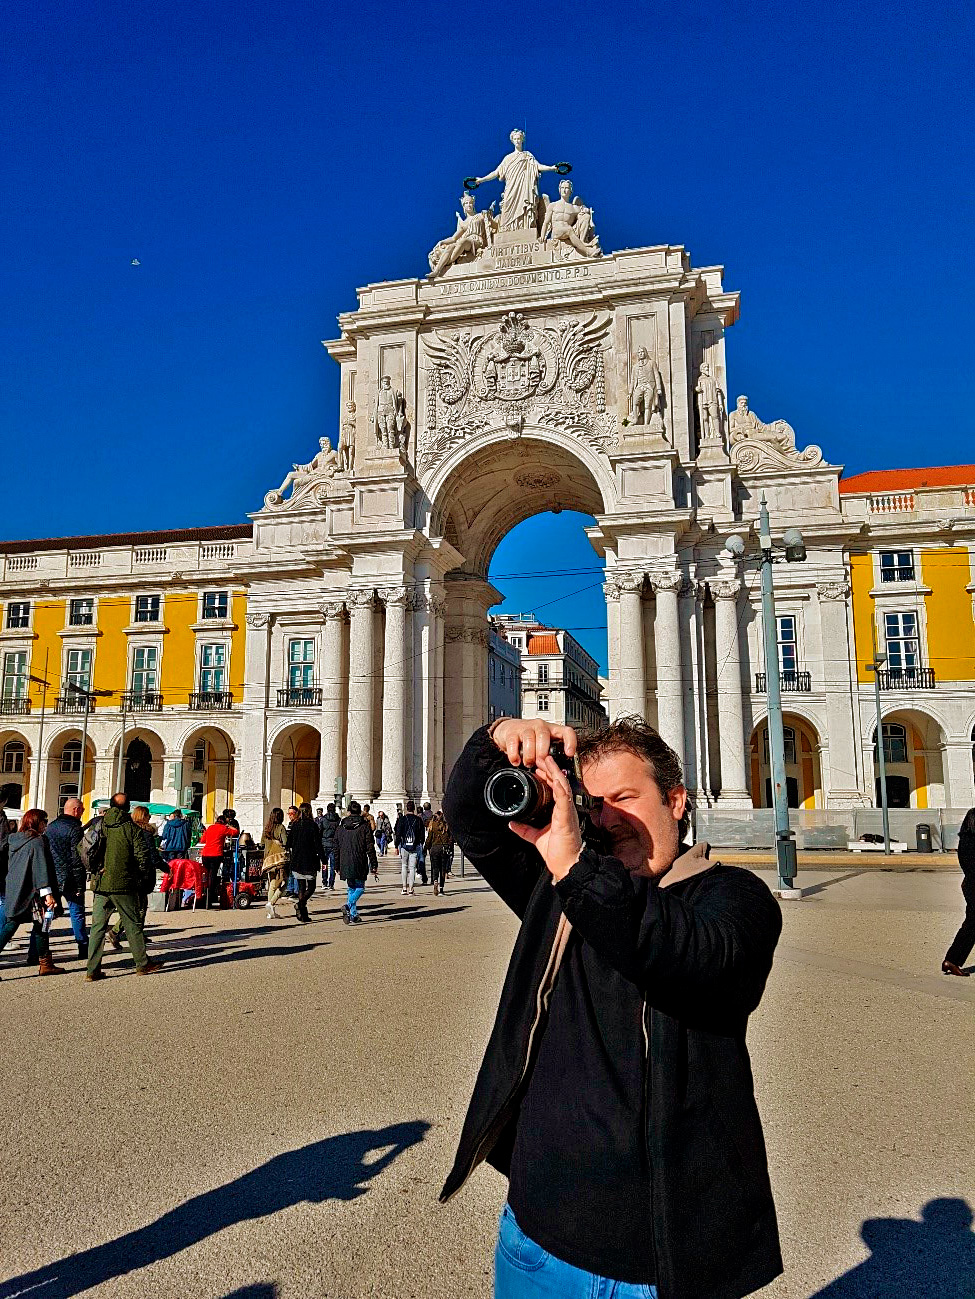 Meu genro Renato registrando as belezas da Praça do Comercio, com o Arco da Rua Augusta ao fundo